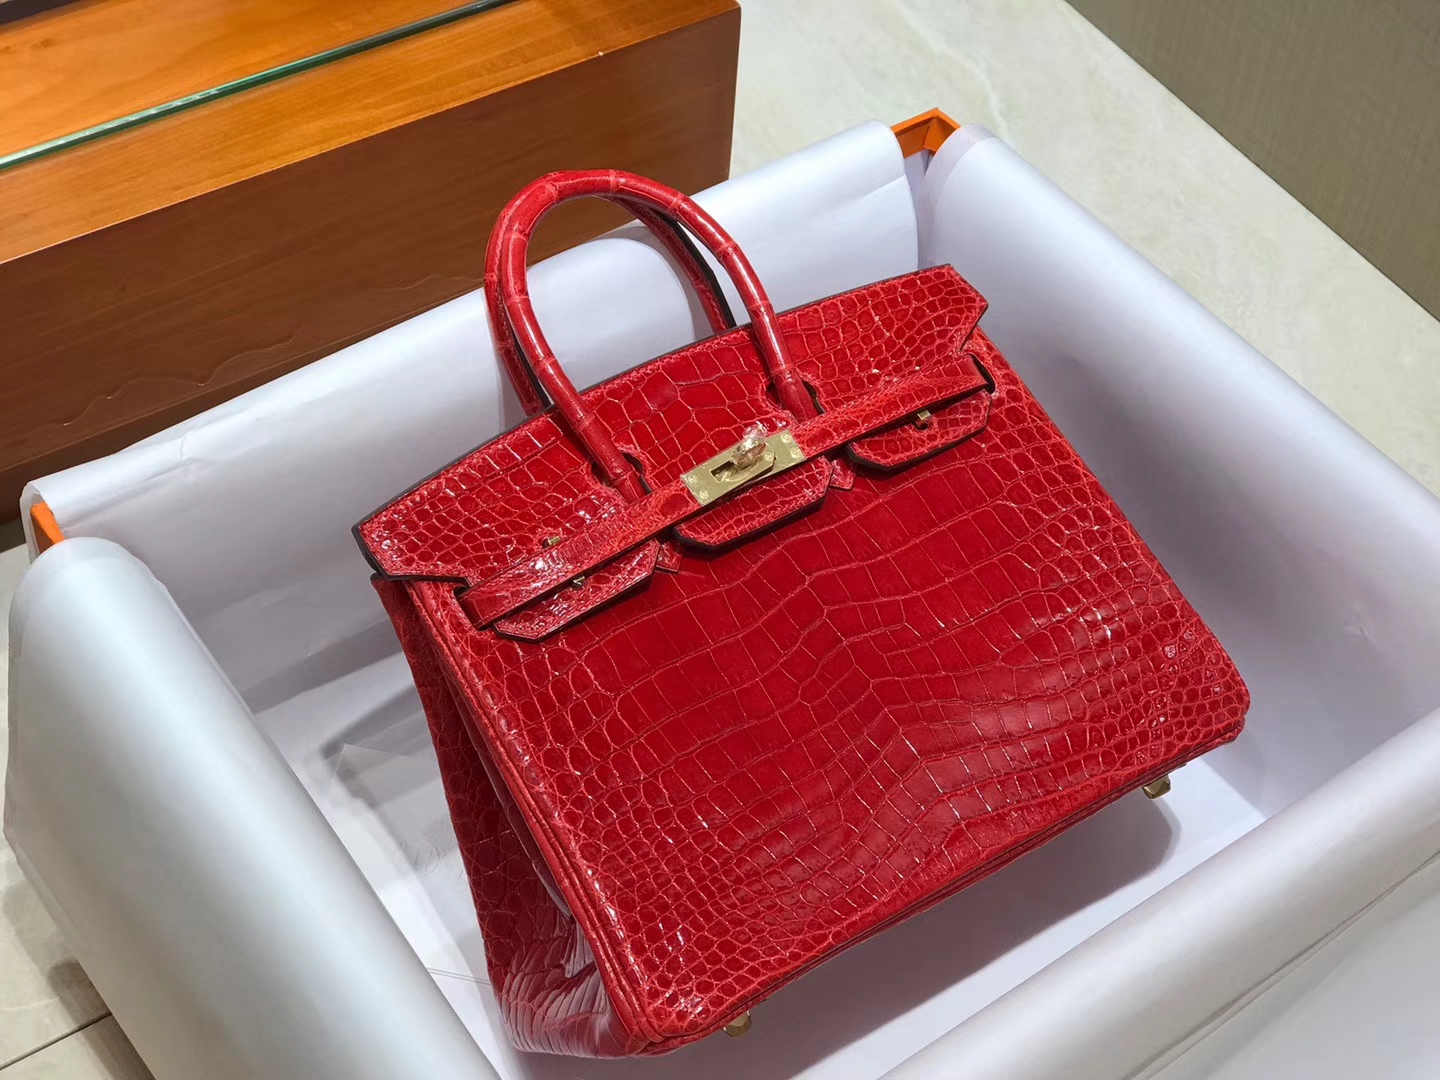 爱马仕 HERMES 铂金包 Birkin 配全套专柜原版包装 全球发售 法拉利红